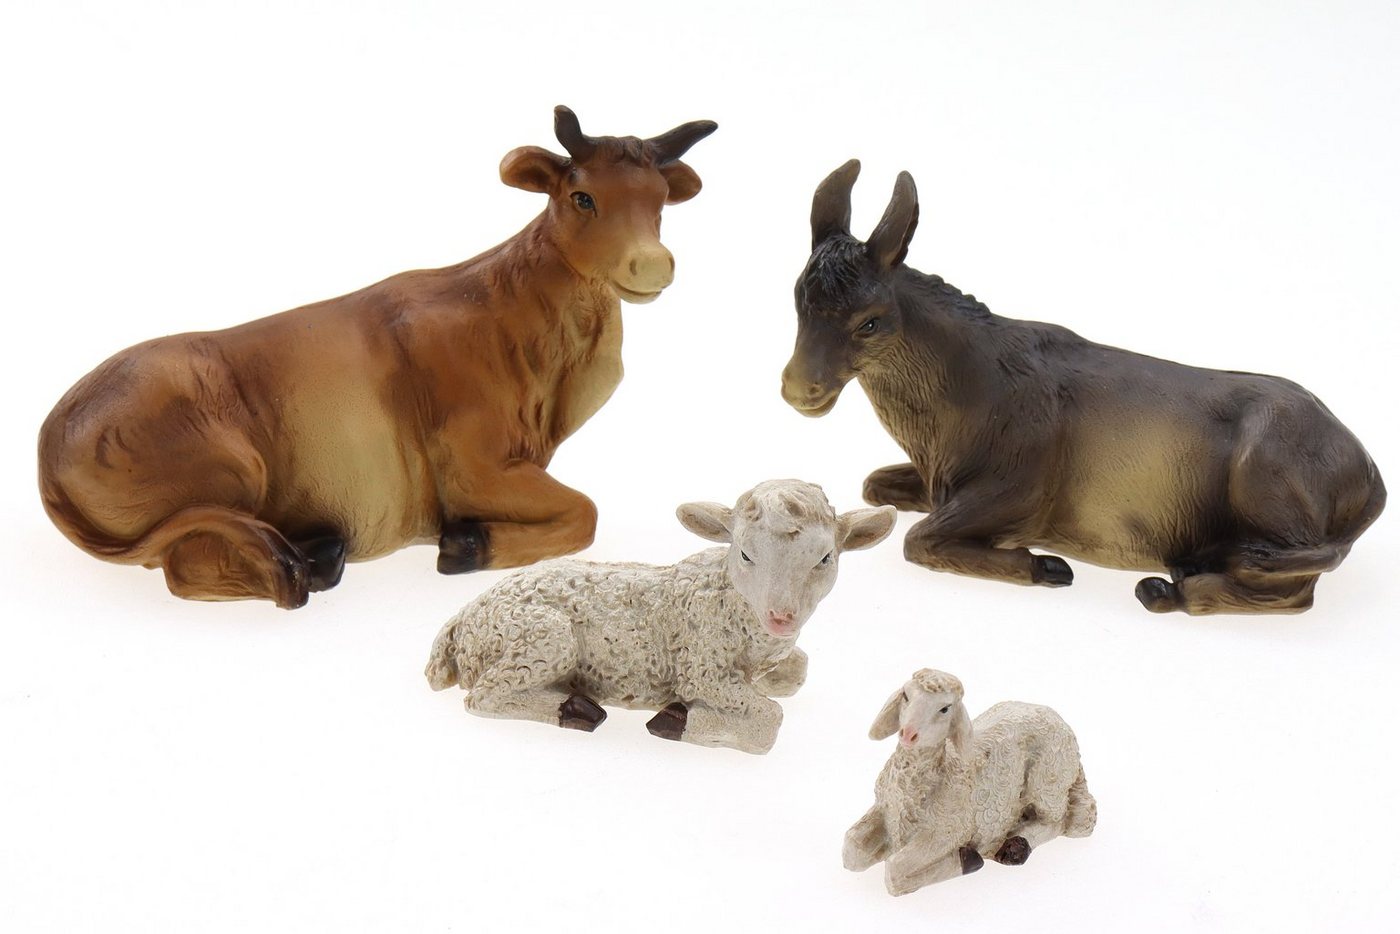 ELLUG Krippenfigur Krippenfiguren Tiere 4er Set Ochse, Esel, Schaf, Lamm als Ersatzfiguren Tierfiguren Krippenzubehör Weihnachtskrippe max. H.: 7,5cm / max. L.: 10cm (4 St) von ELLUG